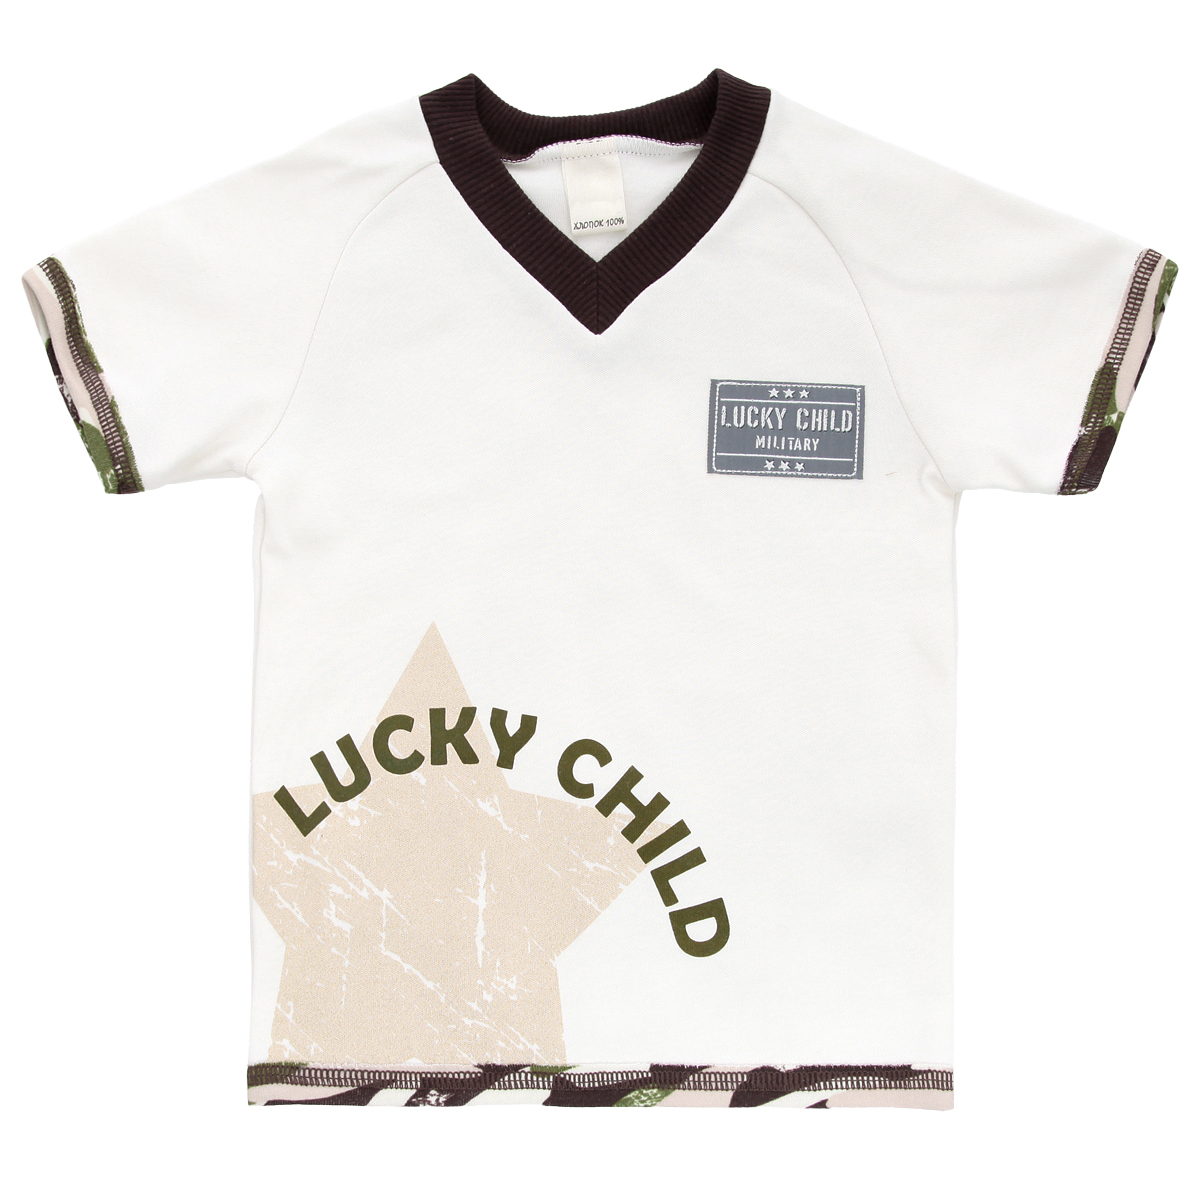 Футболка для мальчика Lucky Child Вежливые люди, цвет: светло-бежевый, темно-коричневый, зеленый. 31-262. Размер 110/116